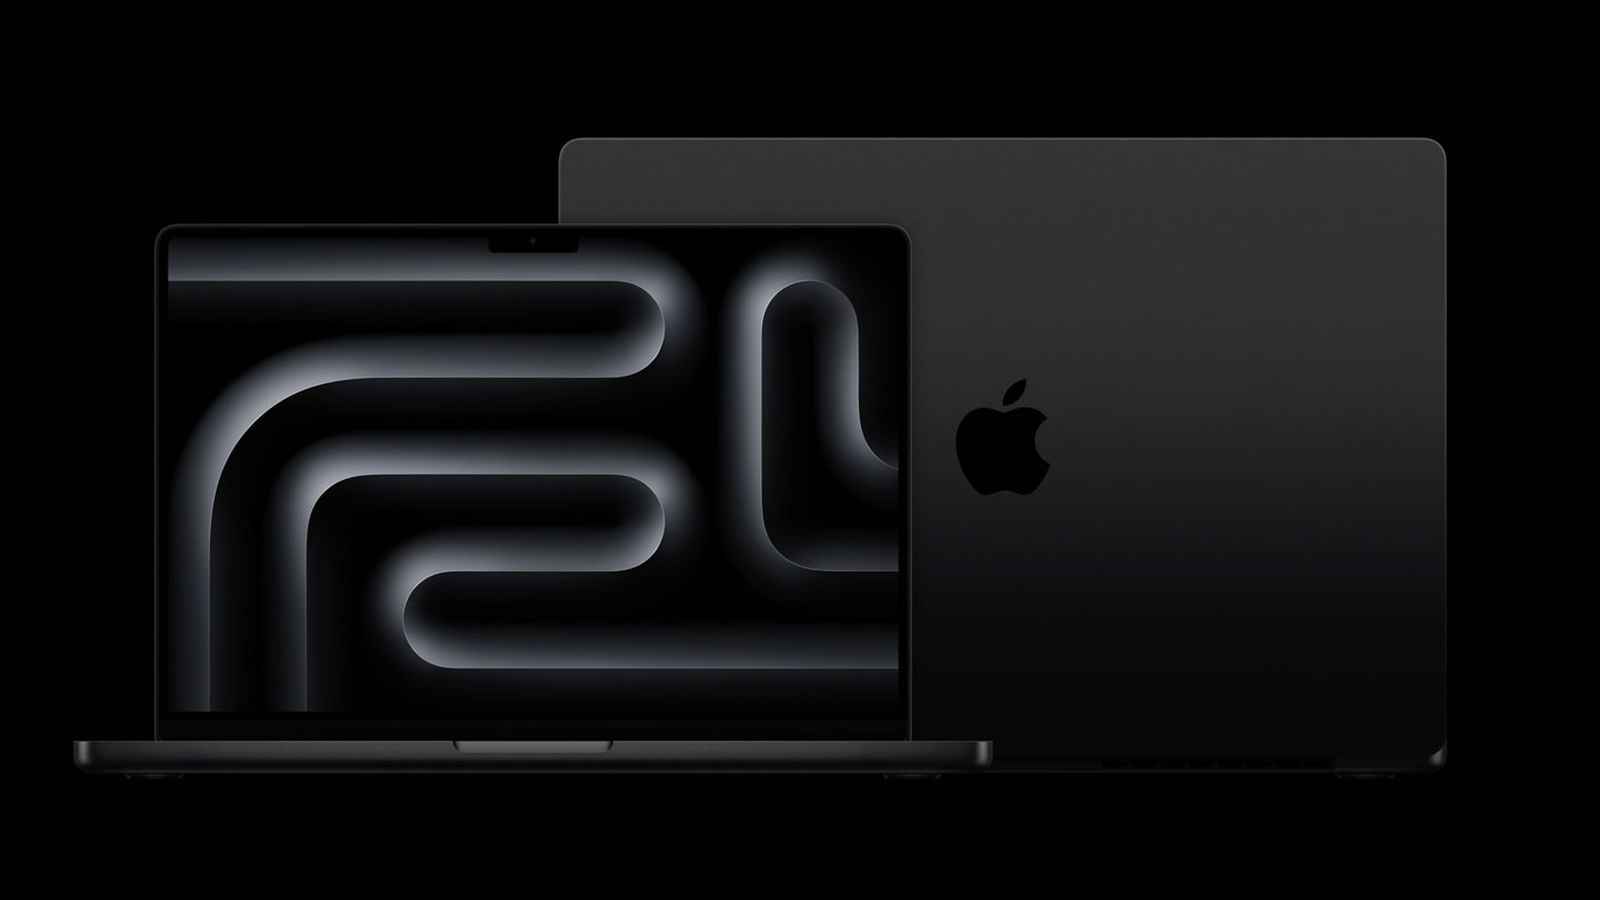 جهاز MacBook Pro Space Black مزود بختم مضاد لبصمات الأصابع تم الكشف عنه في مقاطع الفيديو العملية